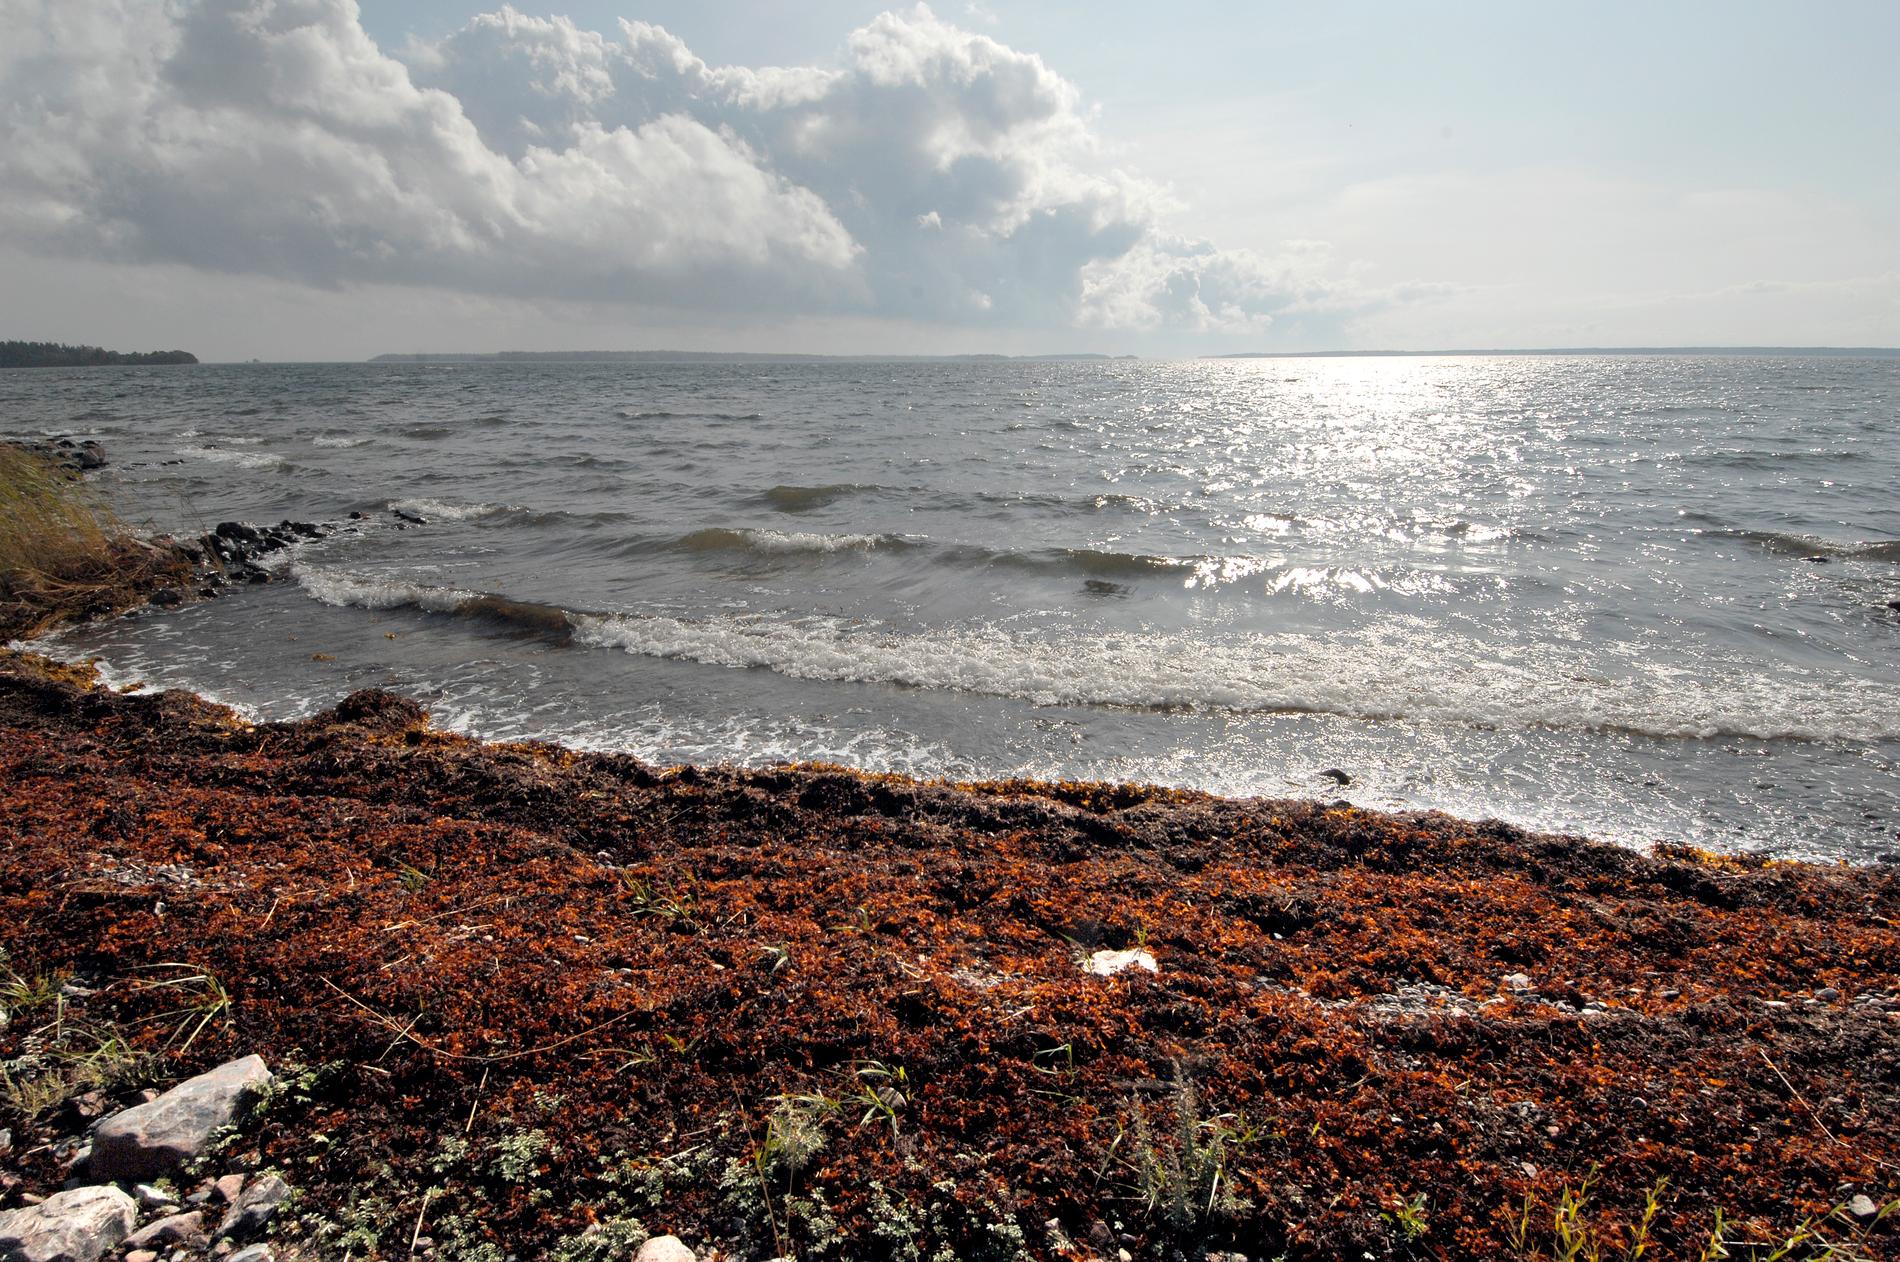 Speciella vindförhållanden gjorde att Östersjön fick påfyllning av saltvatten. Det är enda sättet som det undre skiktet av havet kan få tillförsel av syre. Arkivbild.